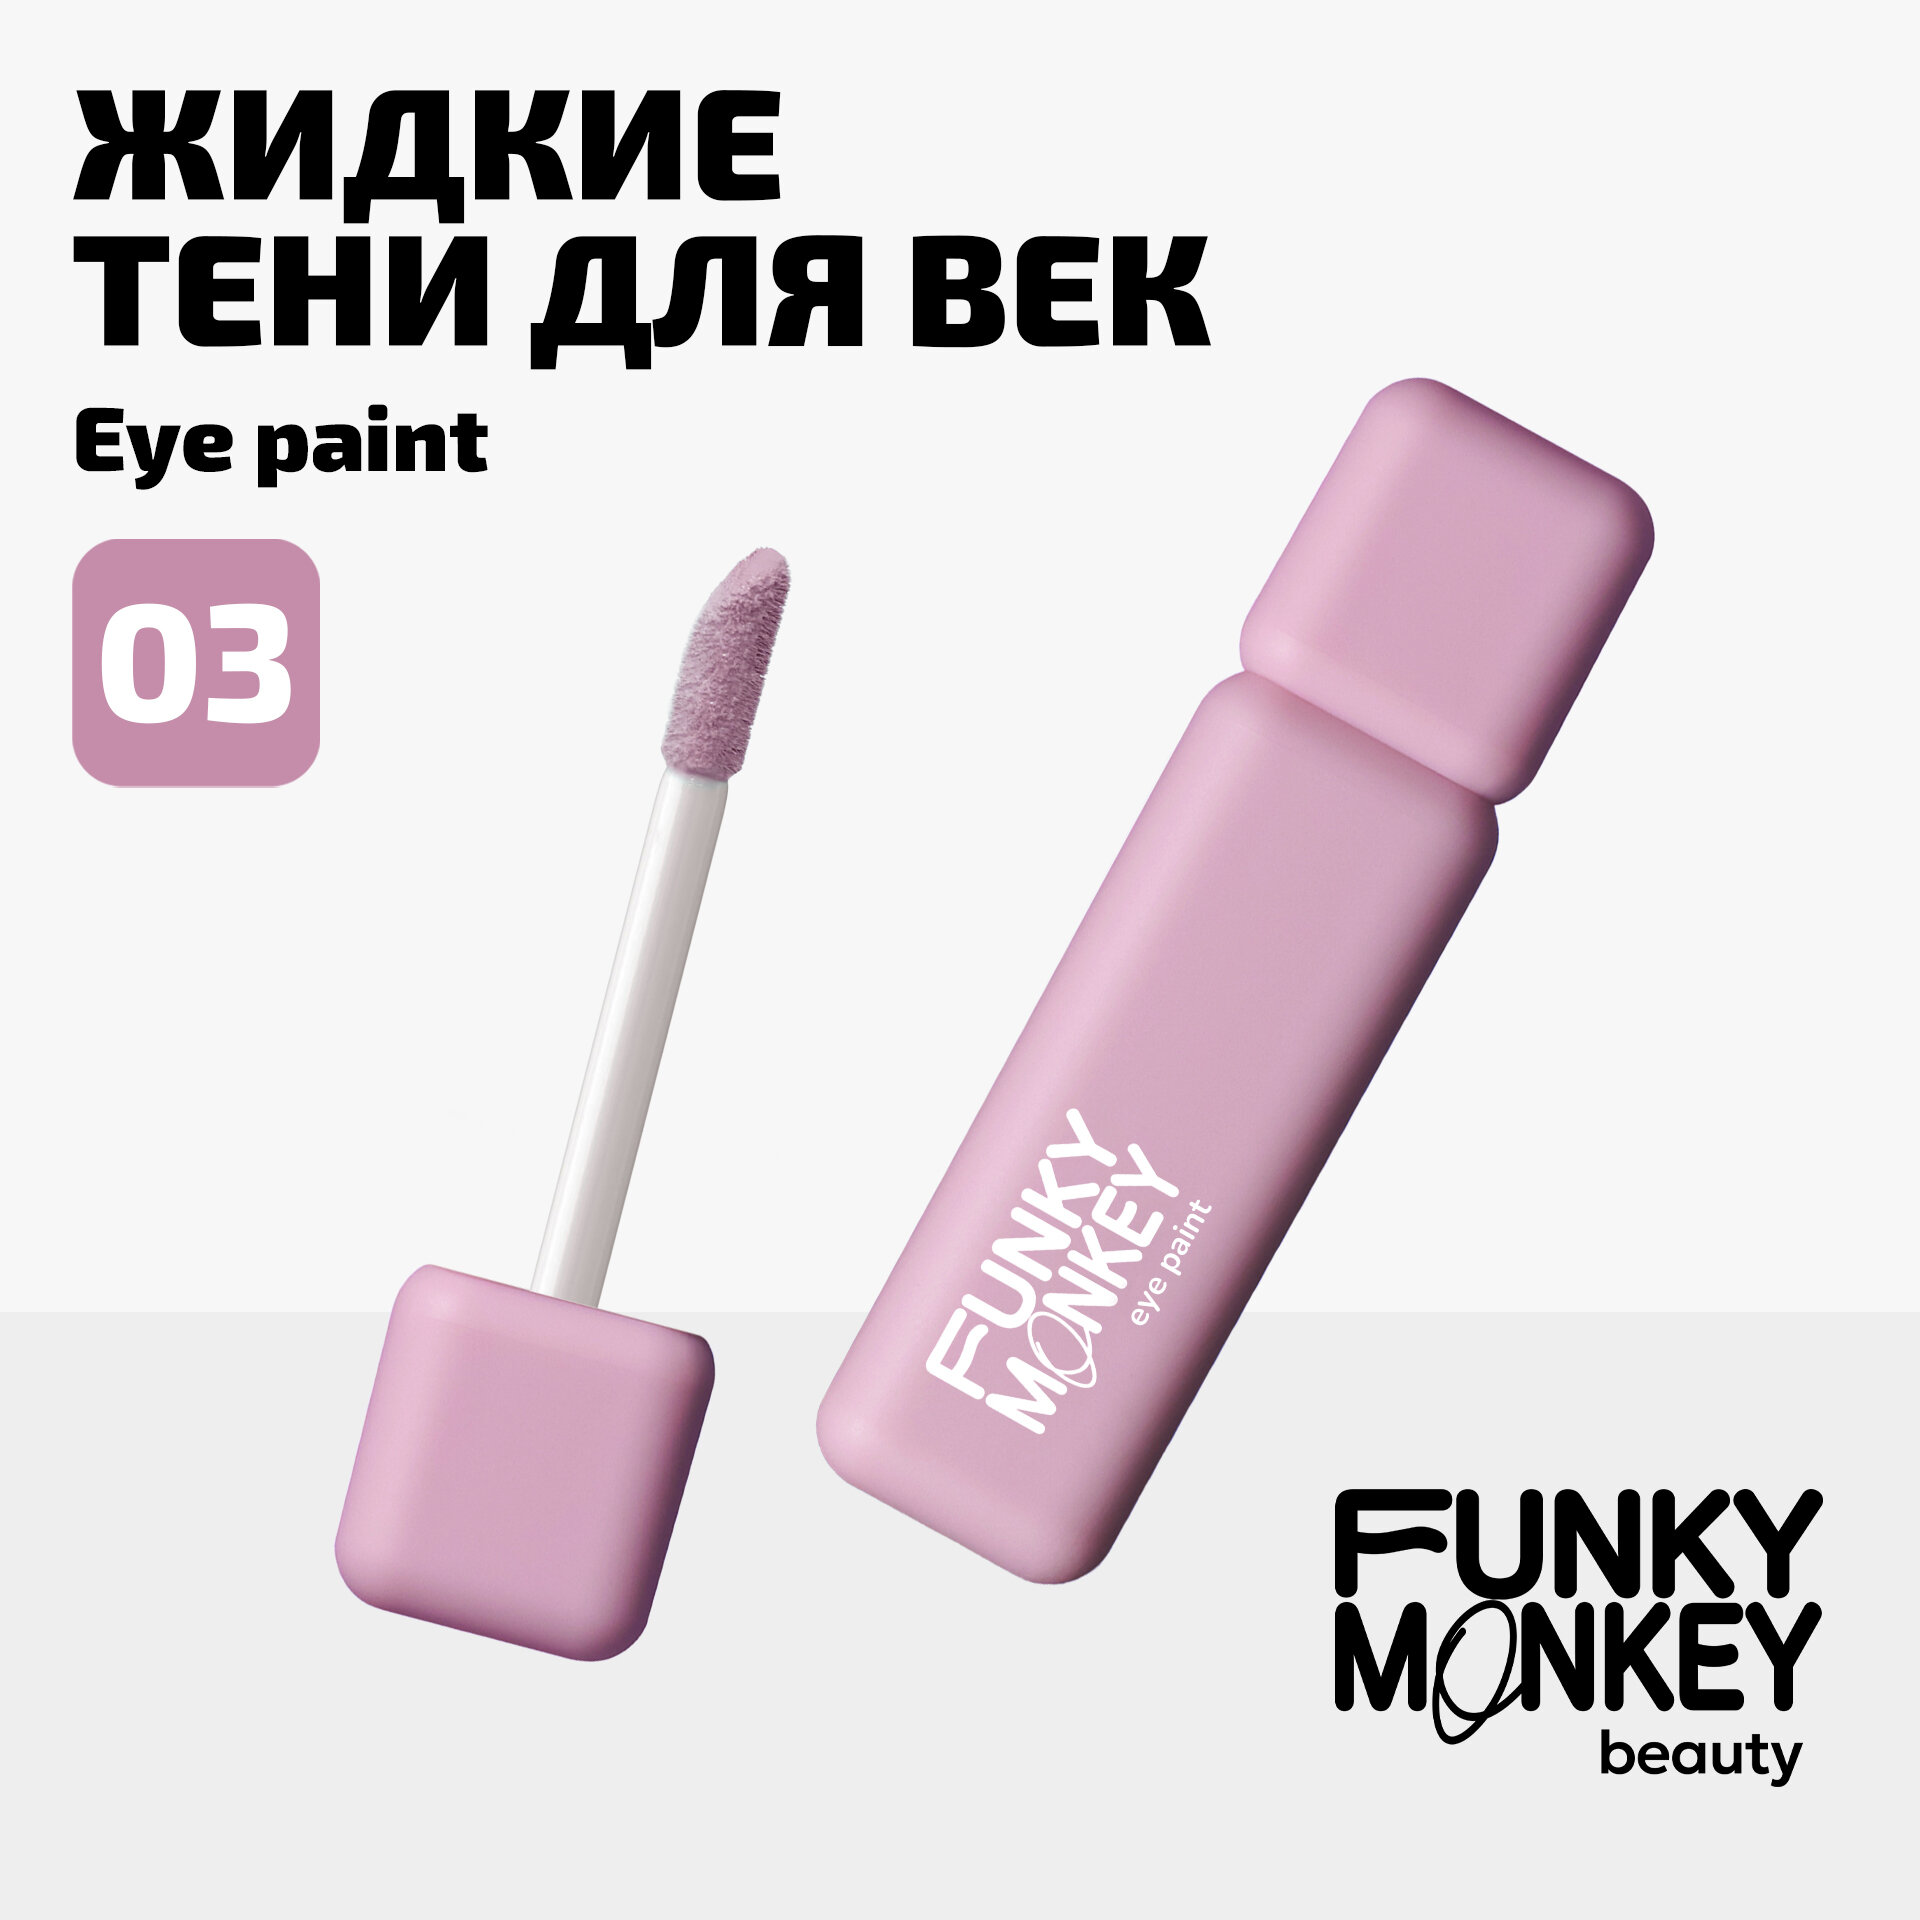 Funky Monkey Тени для век ультрапигментированные Eye paint тон 03